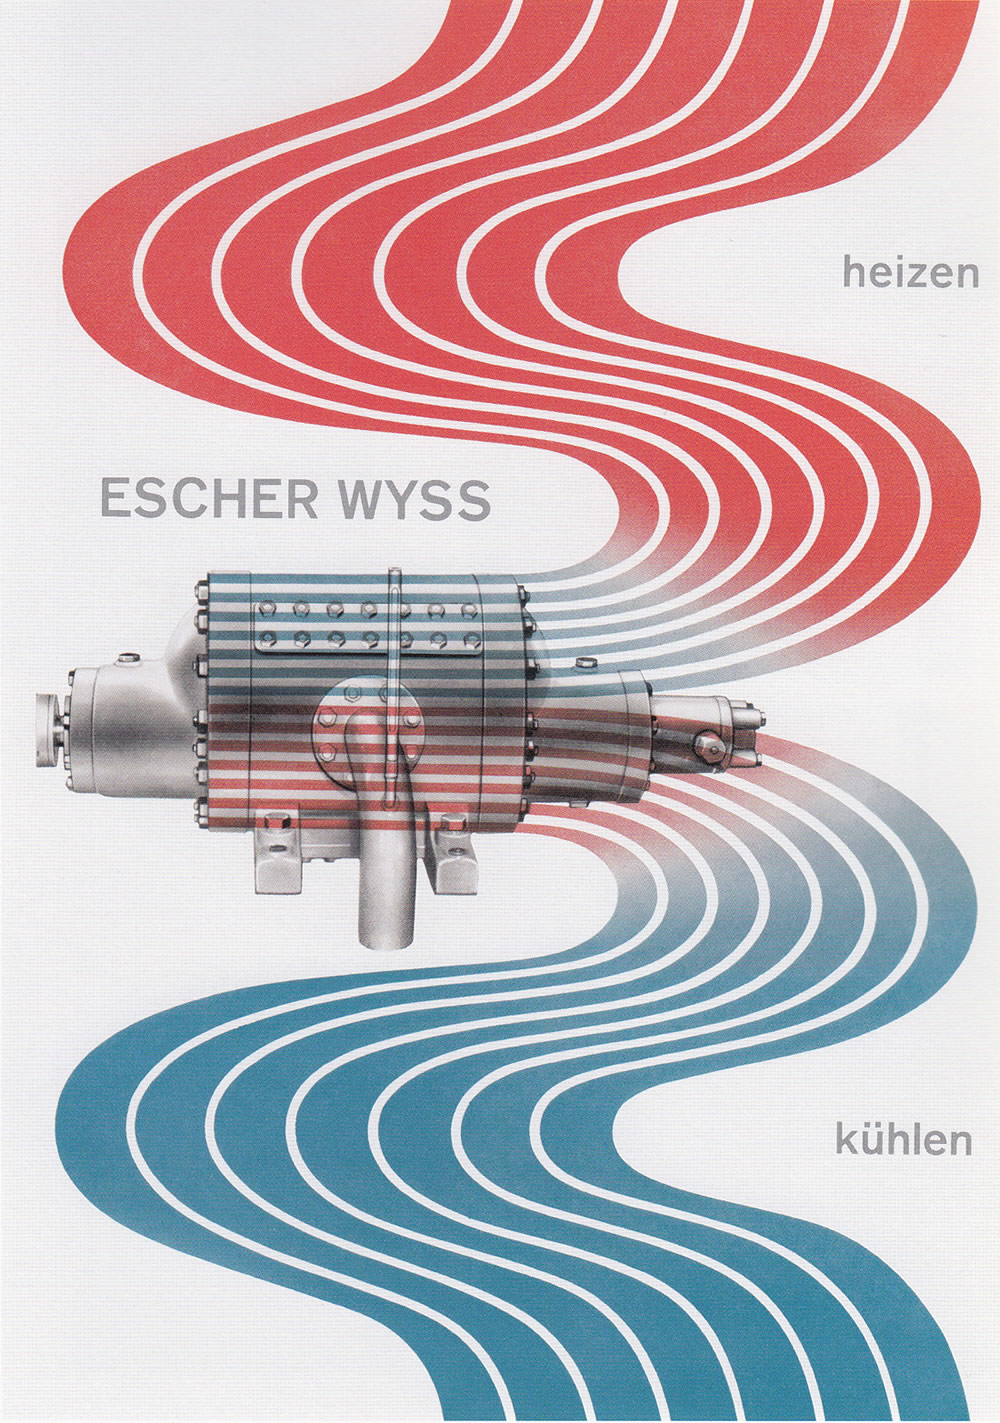 Richard Paul Lohse: Escher Wyss AG, heizen – kühlen, 1948